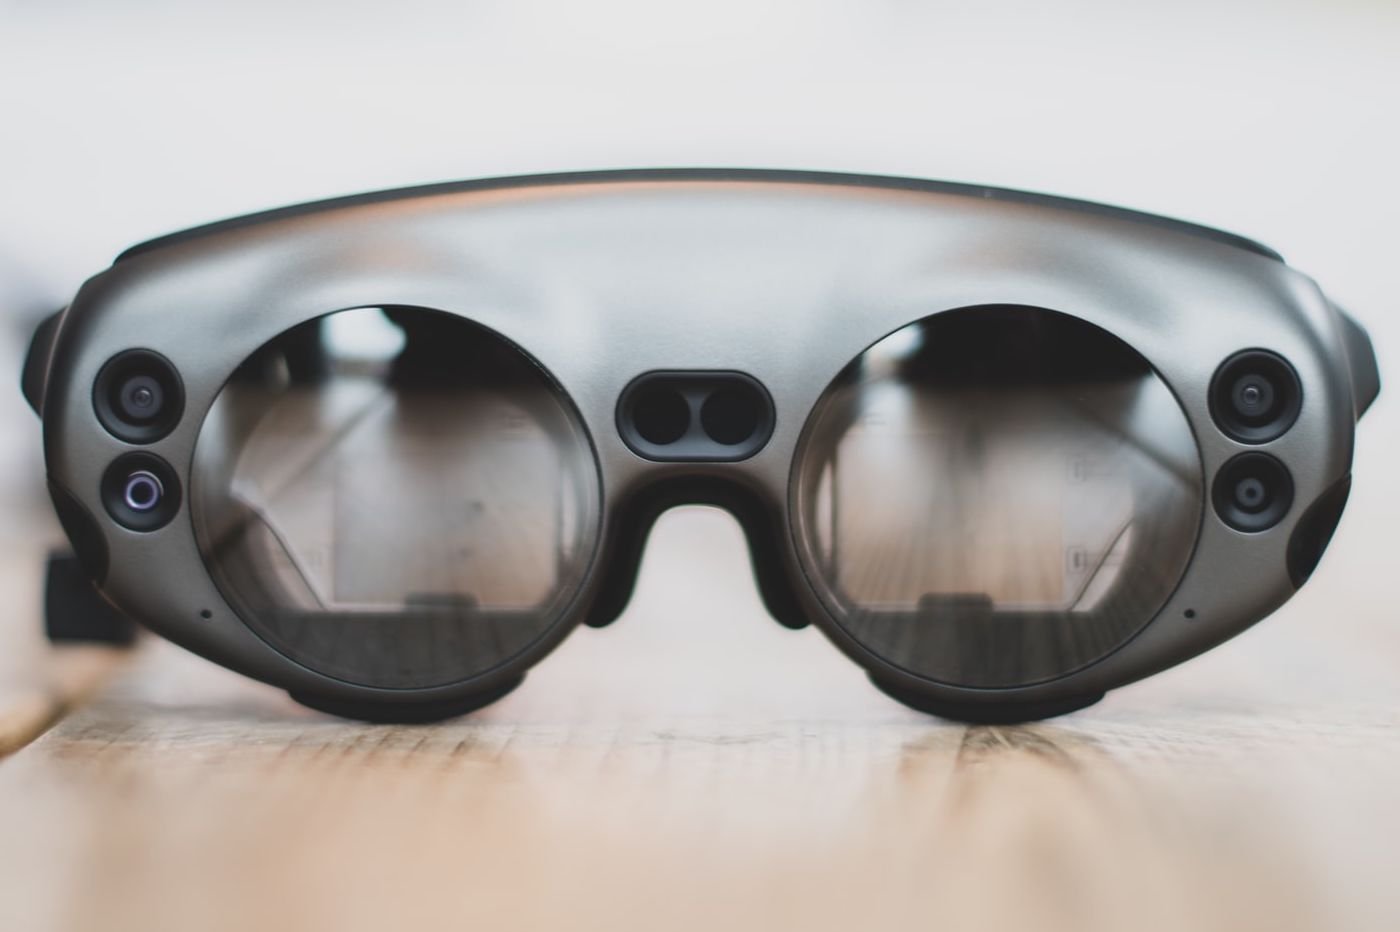 Réalité augmentée : les lunettes connectées d'Apple lancées en 2019 ?